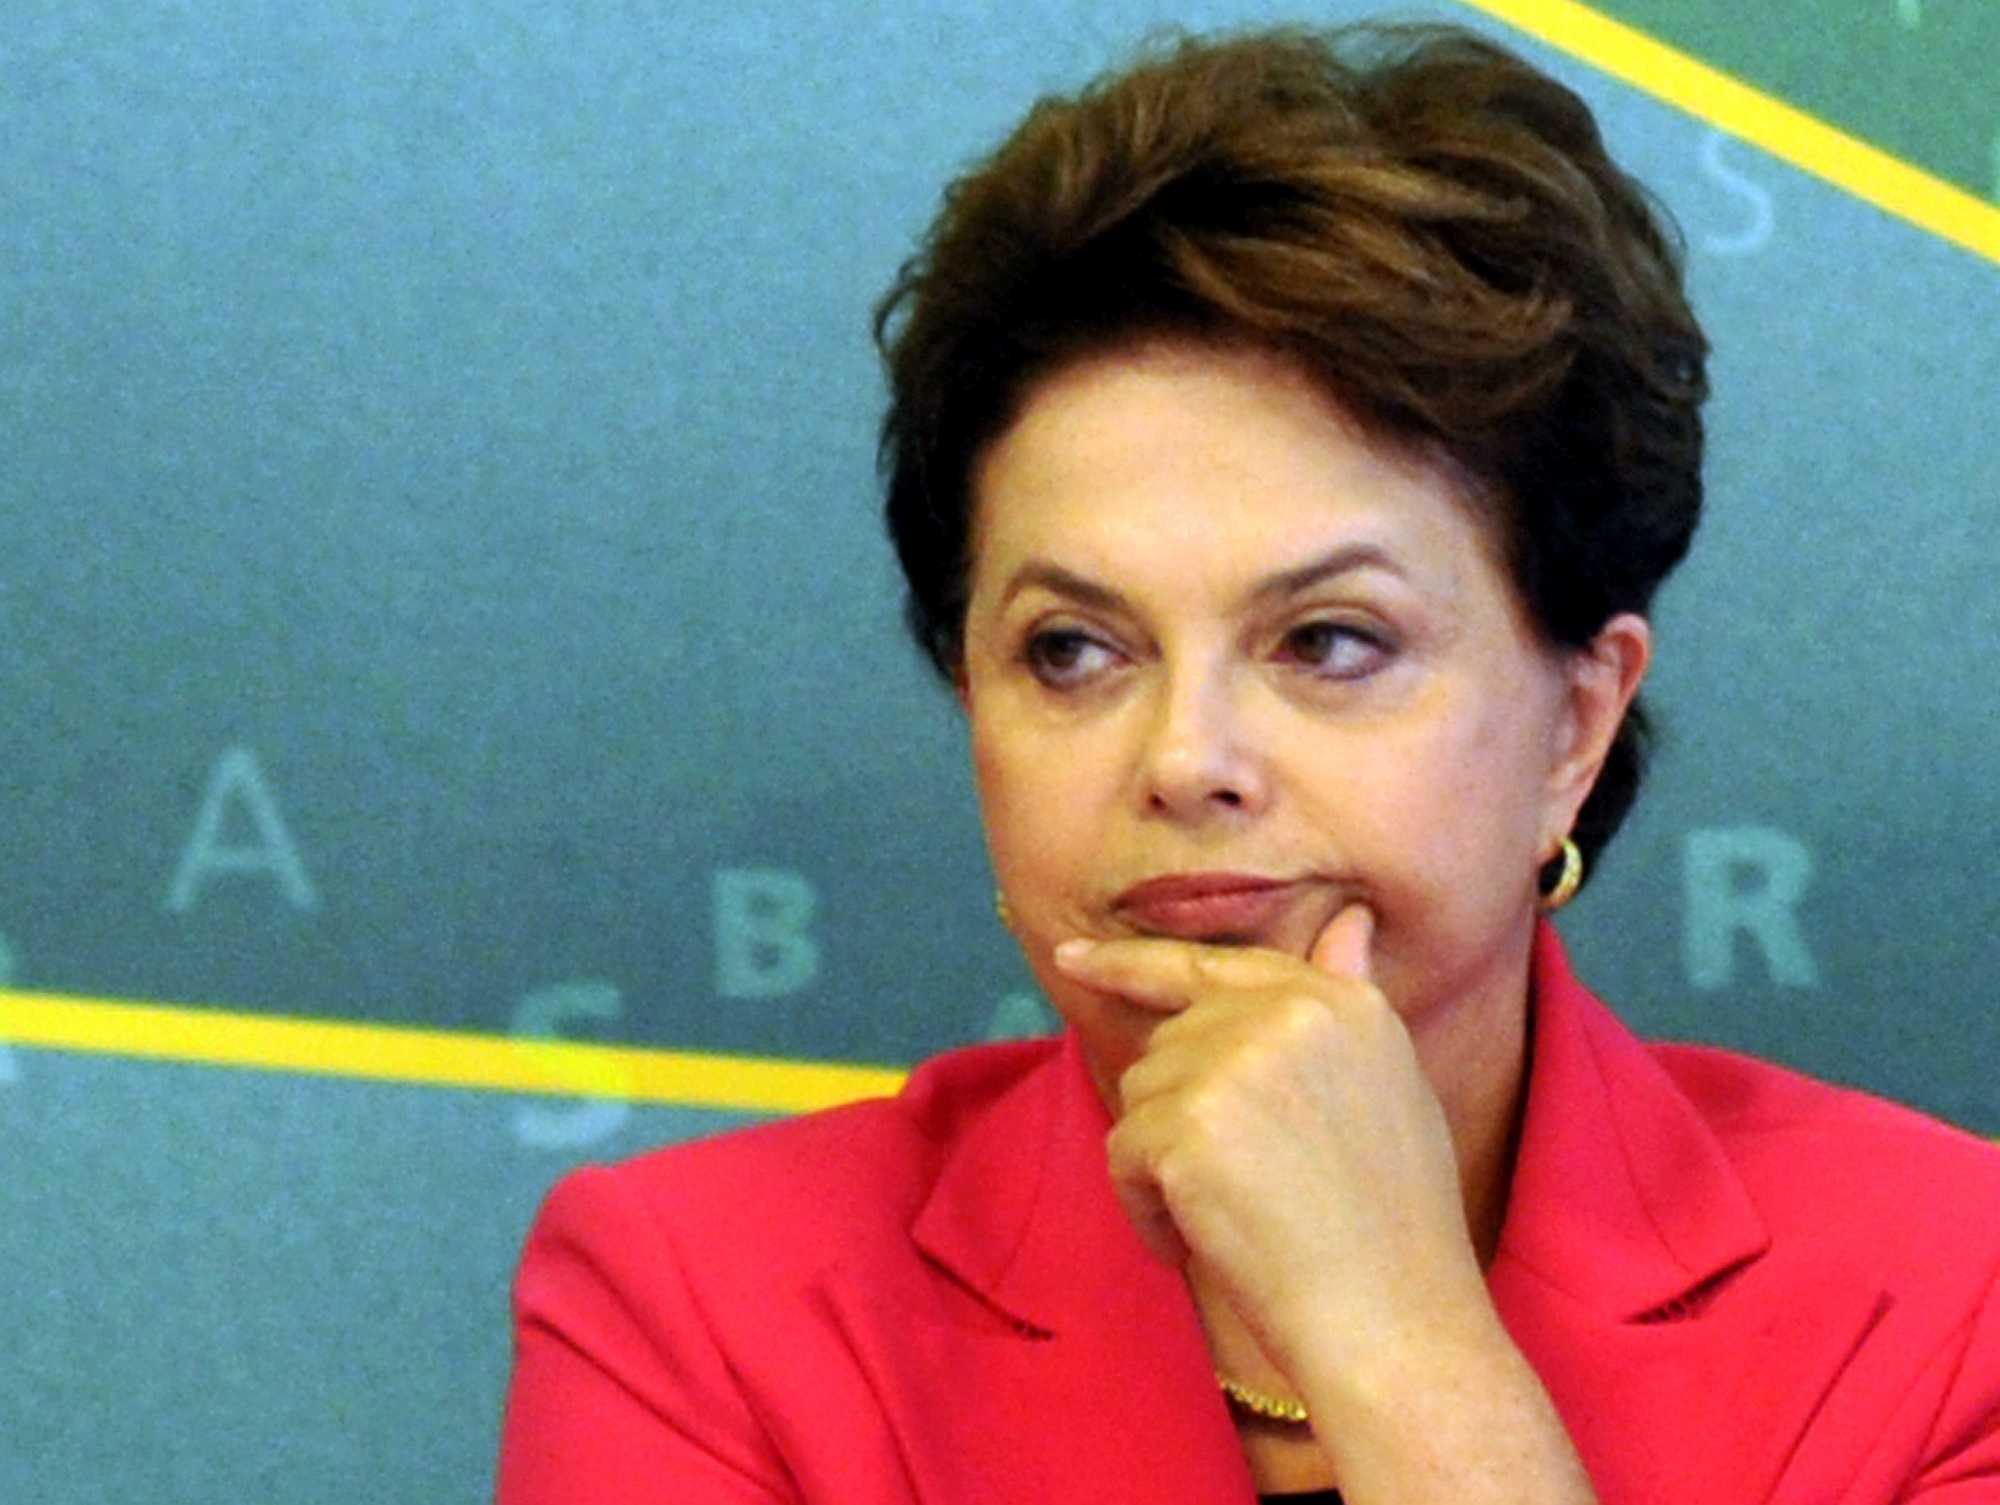 Dilma Rousseff, former president of Brazil